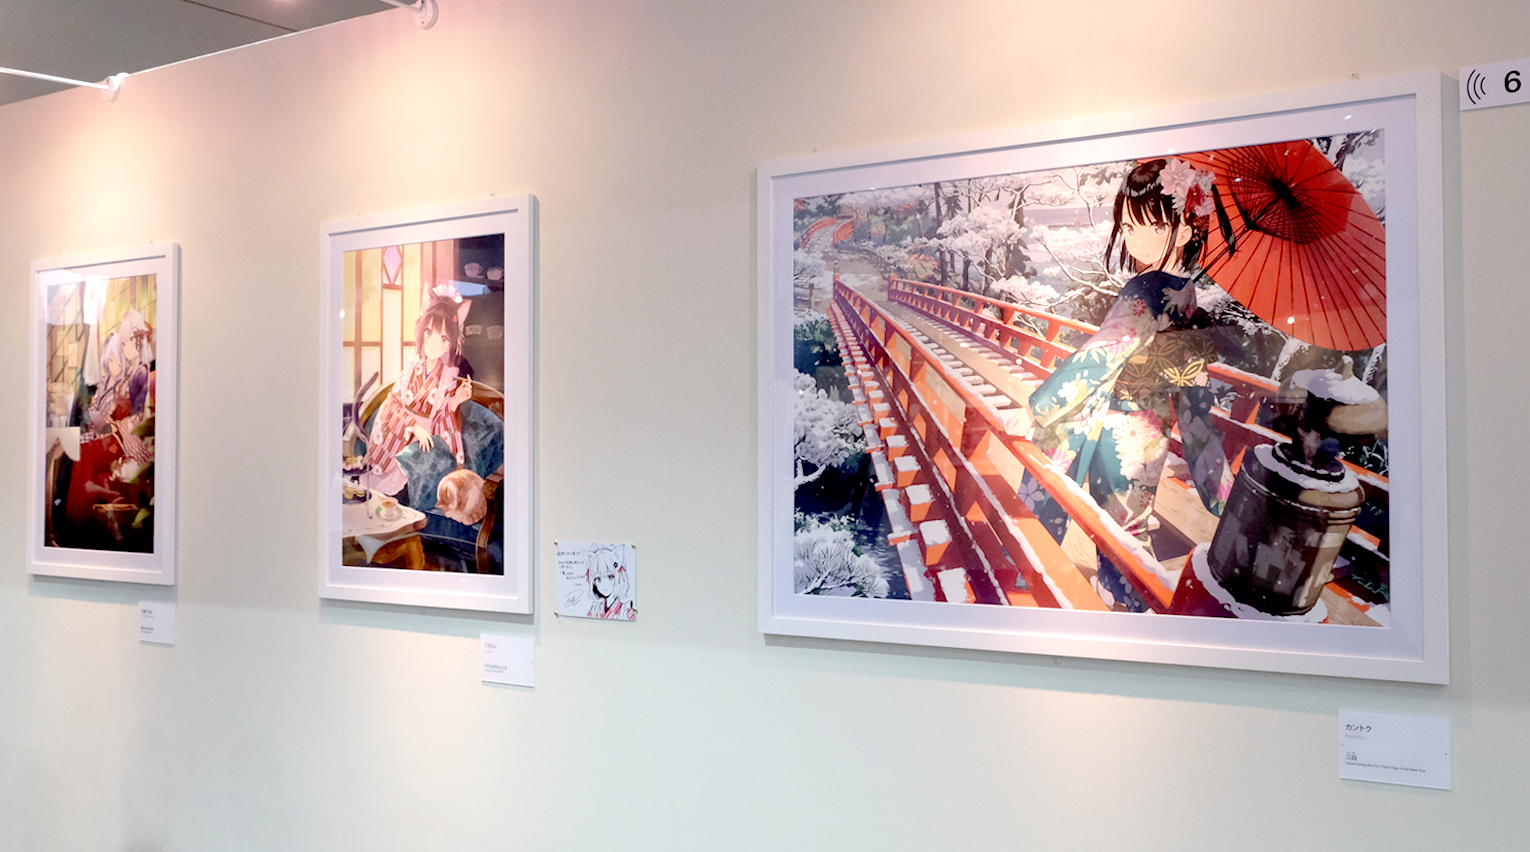 絵師は世界を結ぶ？ 日本のポップカルチャーを発信し続ける「絵師100人展」レポート